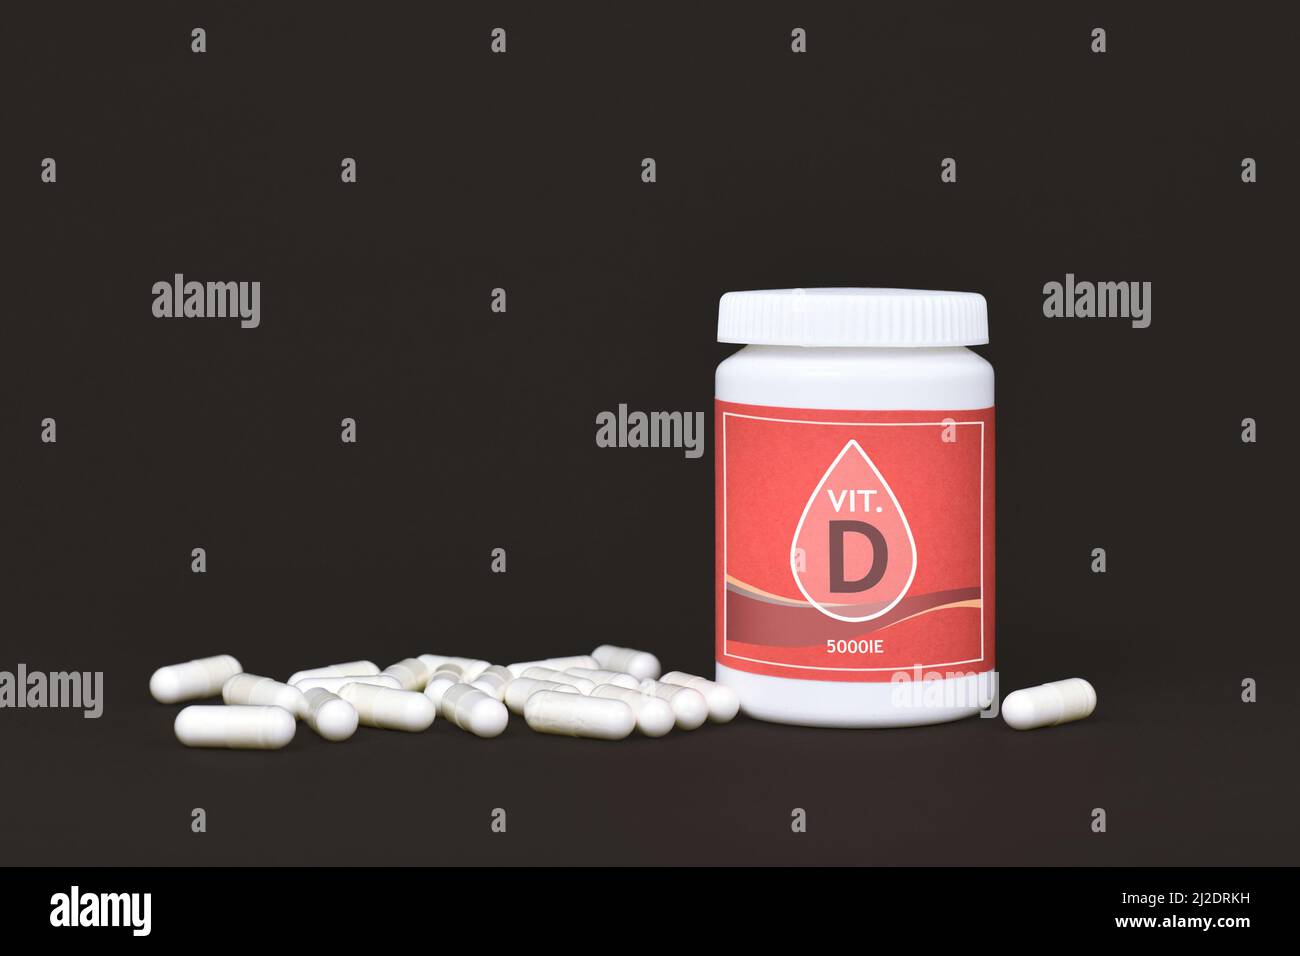 Suplemento alimenticio de vitamina D con recipiente con pastillas sobre fondo oscuro Foto de stock